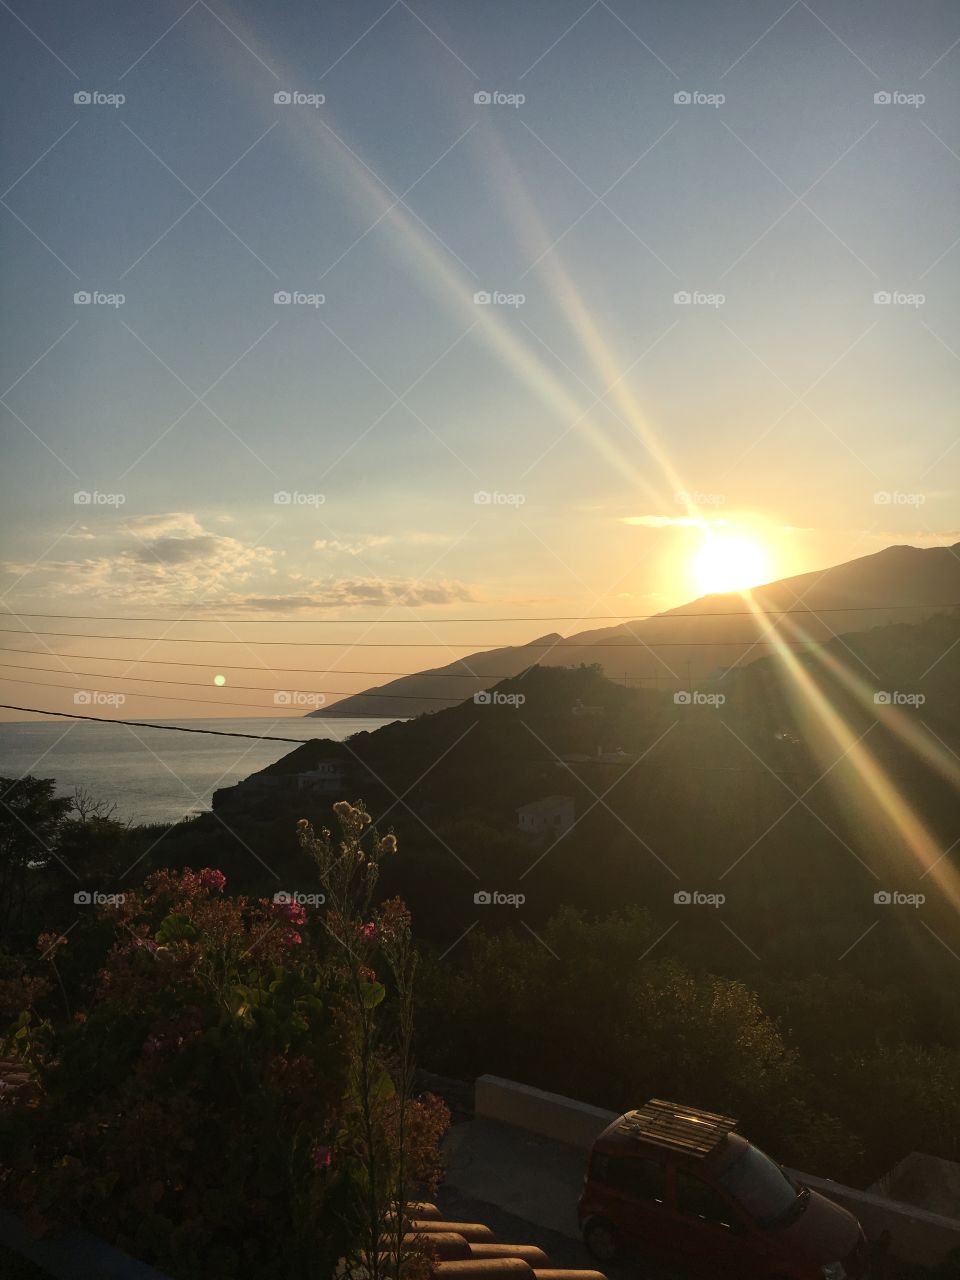 Sunrise in Ikaria, Greece